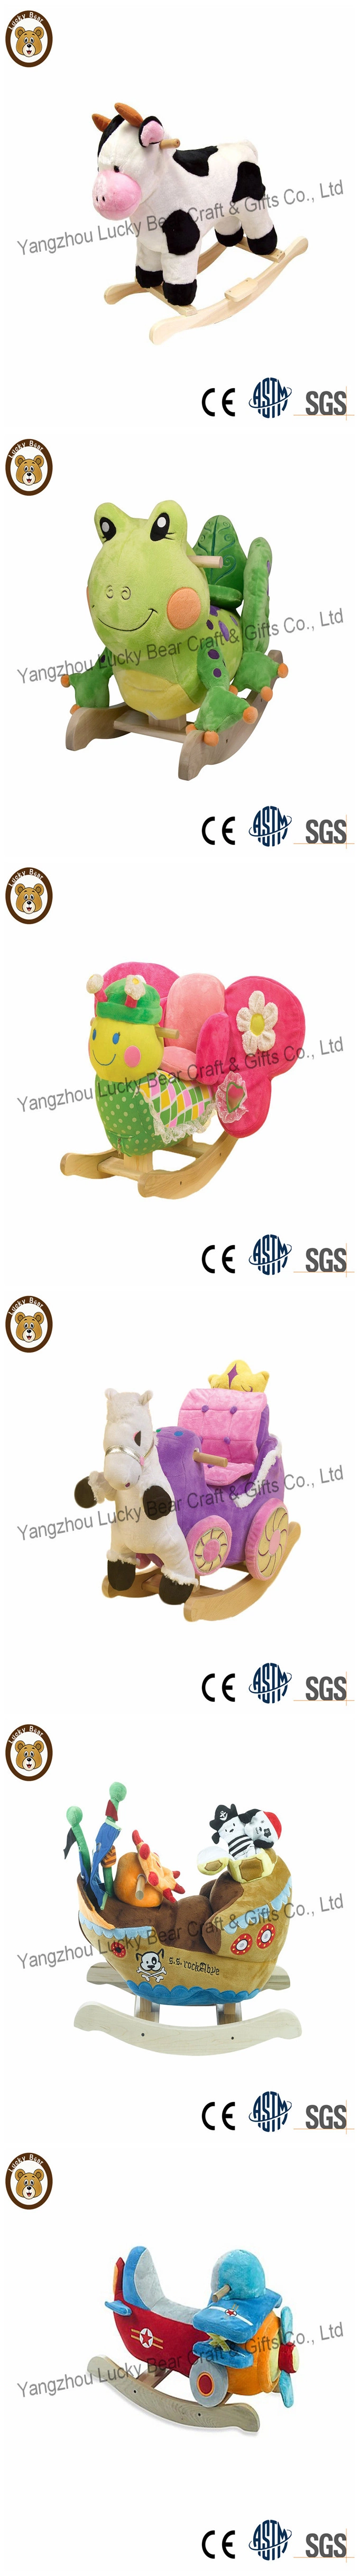 Wholesale Animal Funny Stuffed Plush Rocking Animal Baby Toys